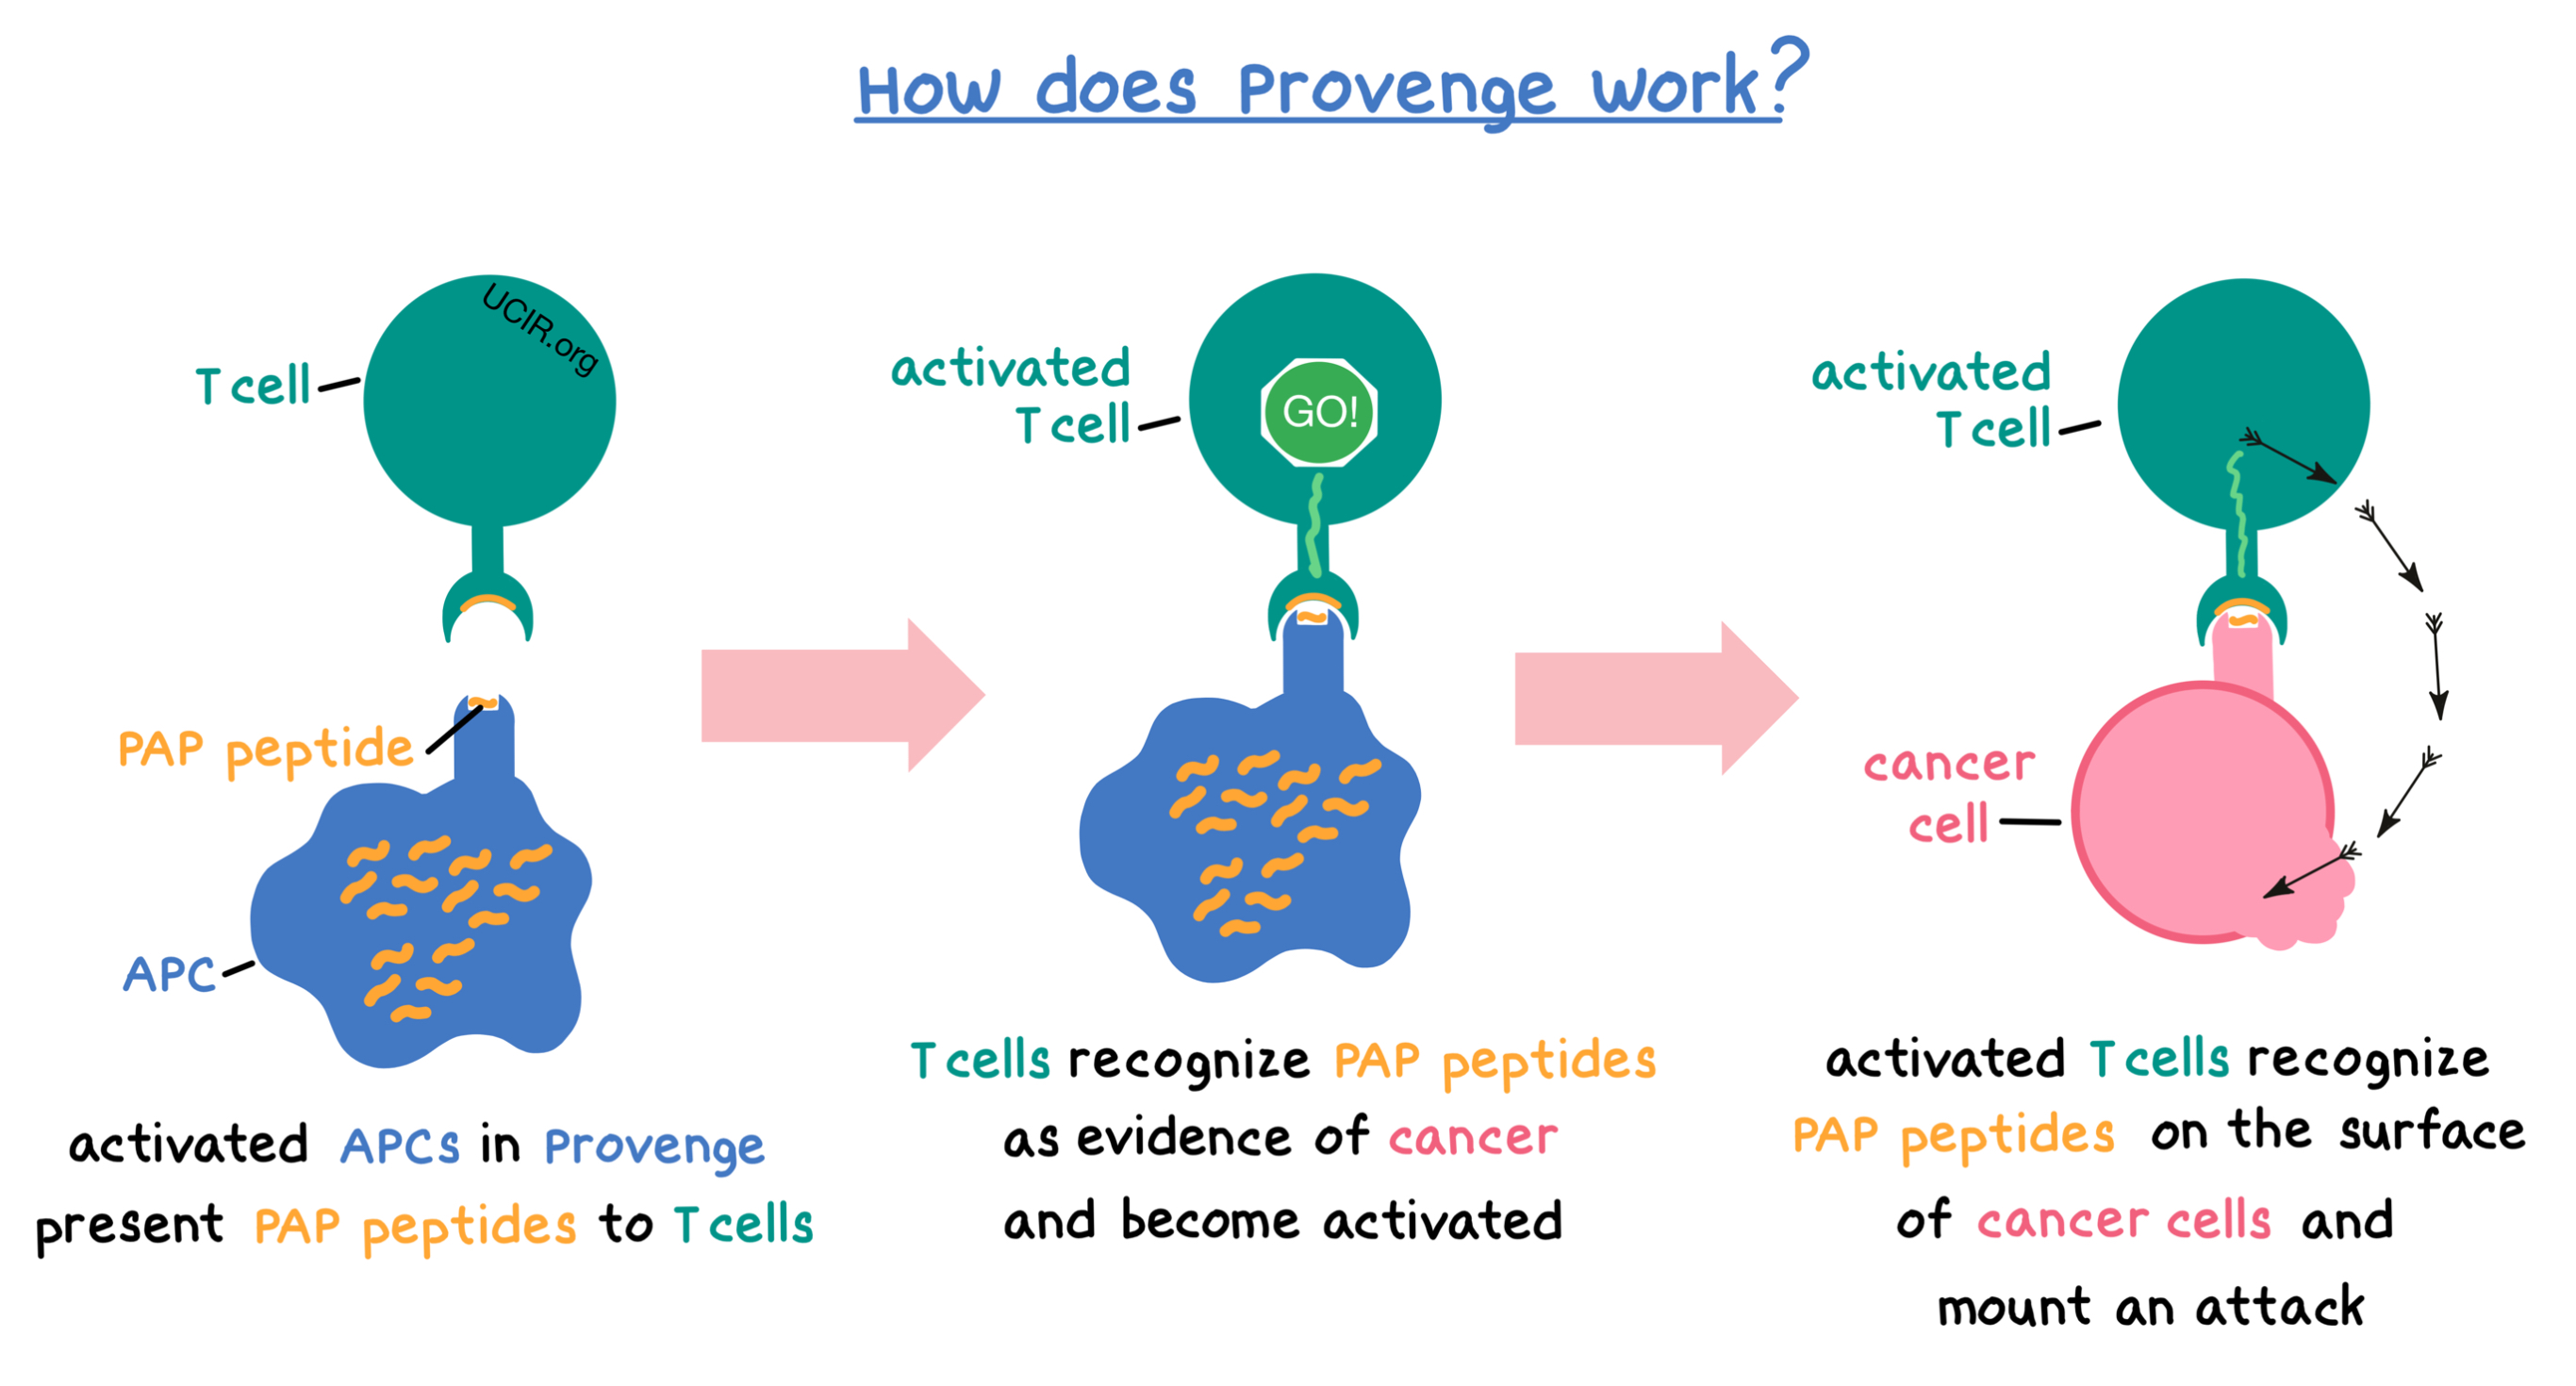 Illustration showing how Provenge works